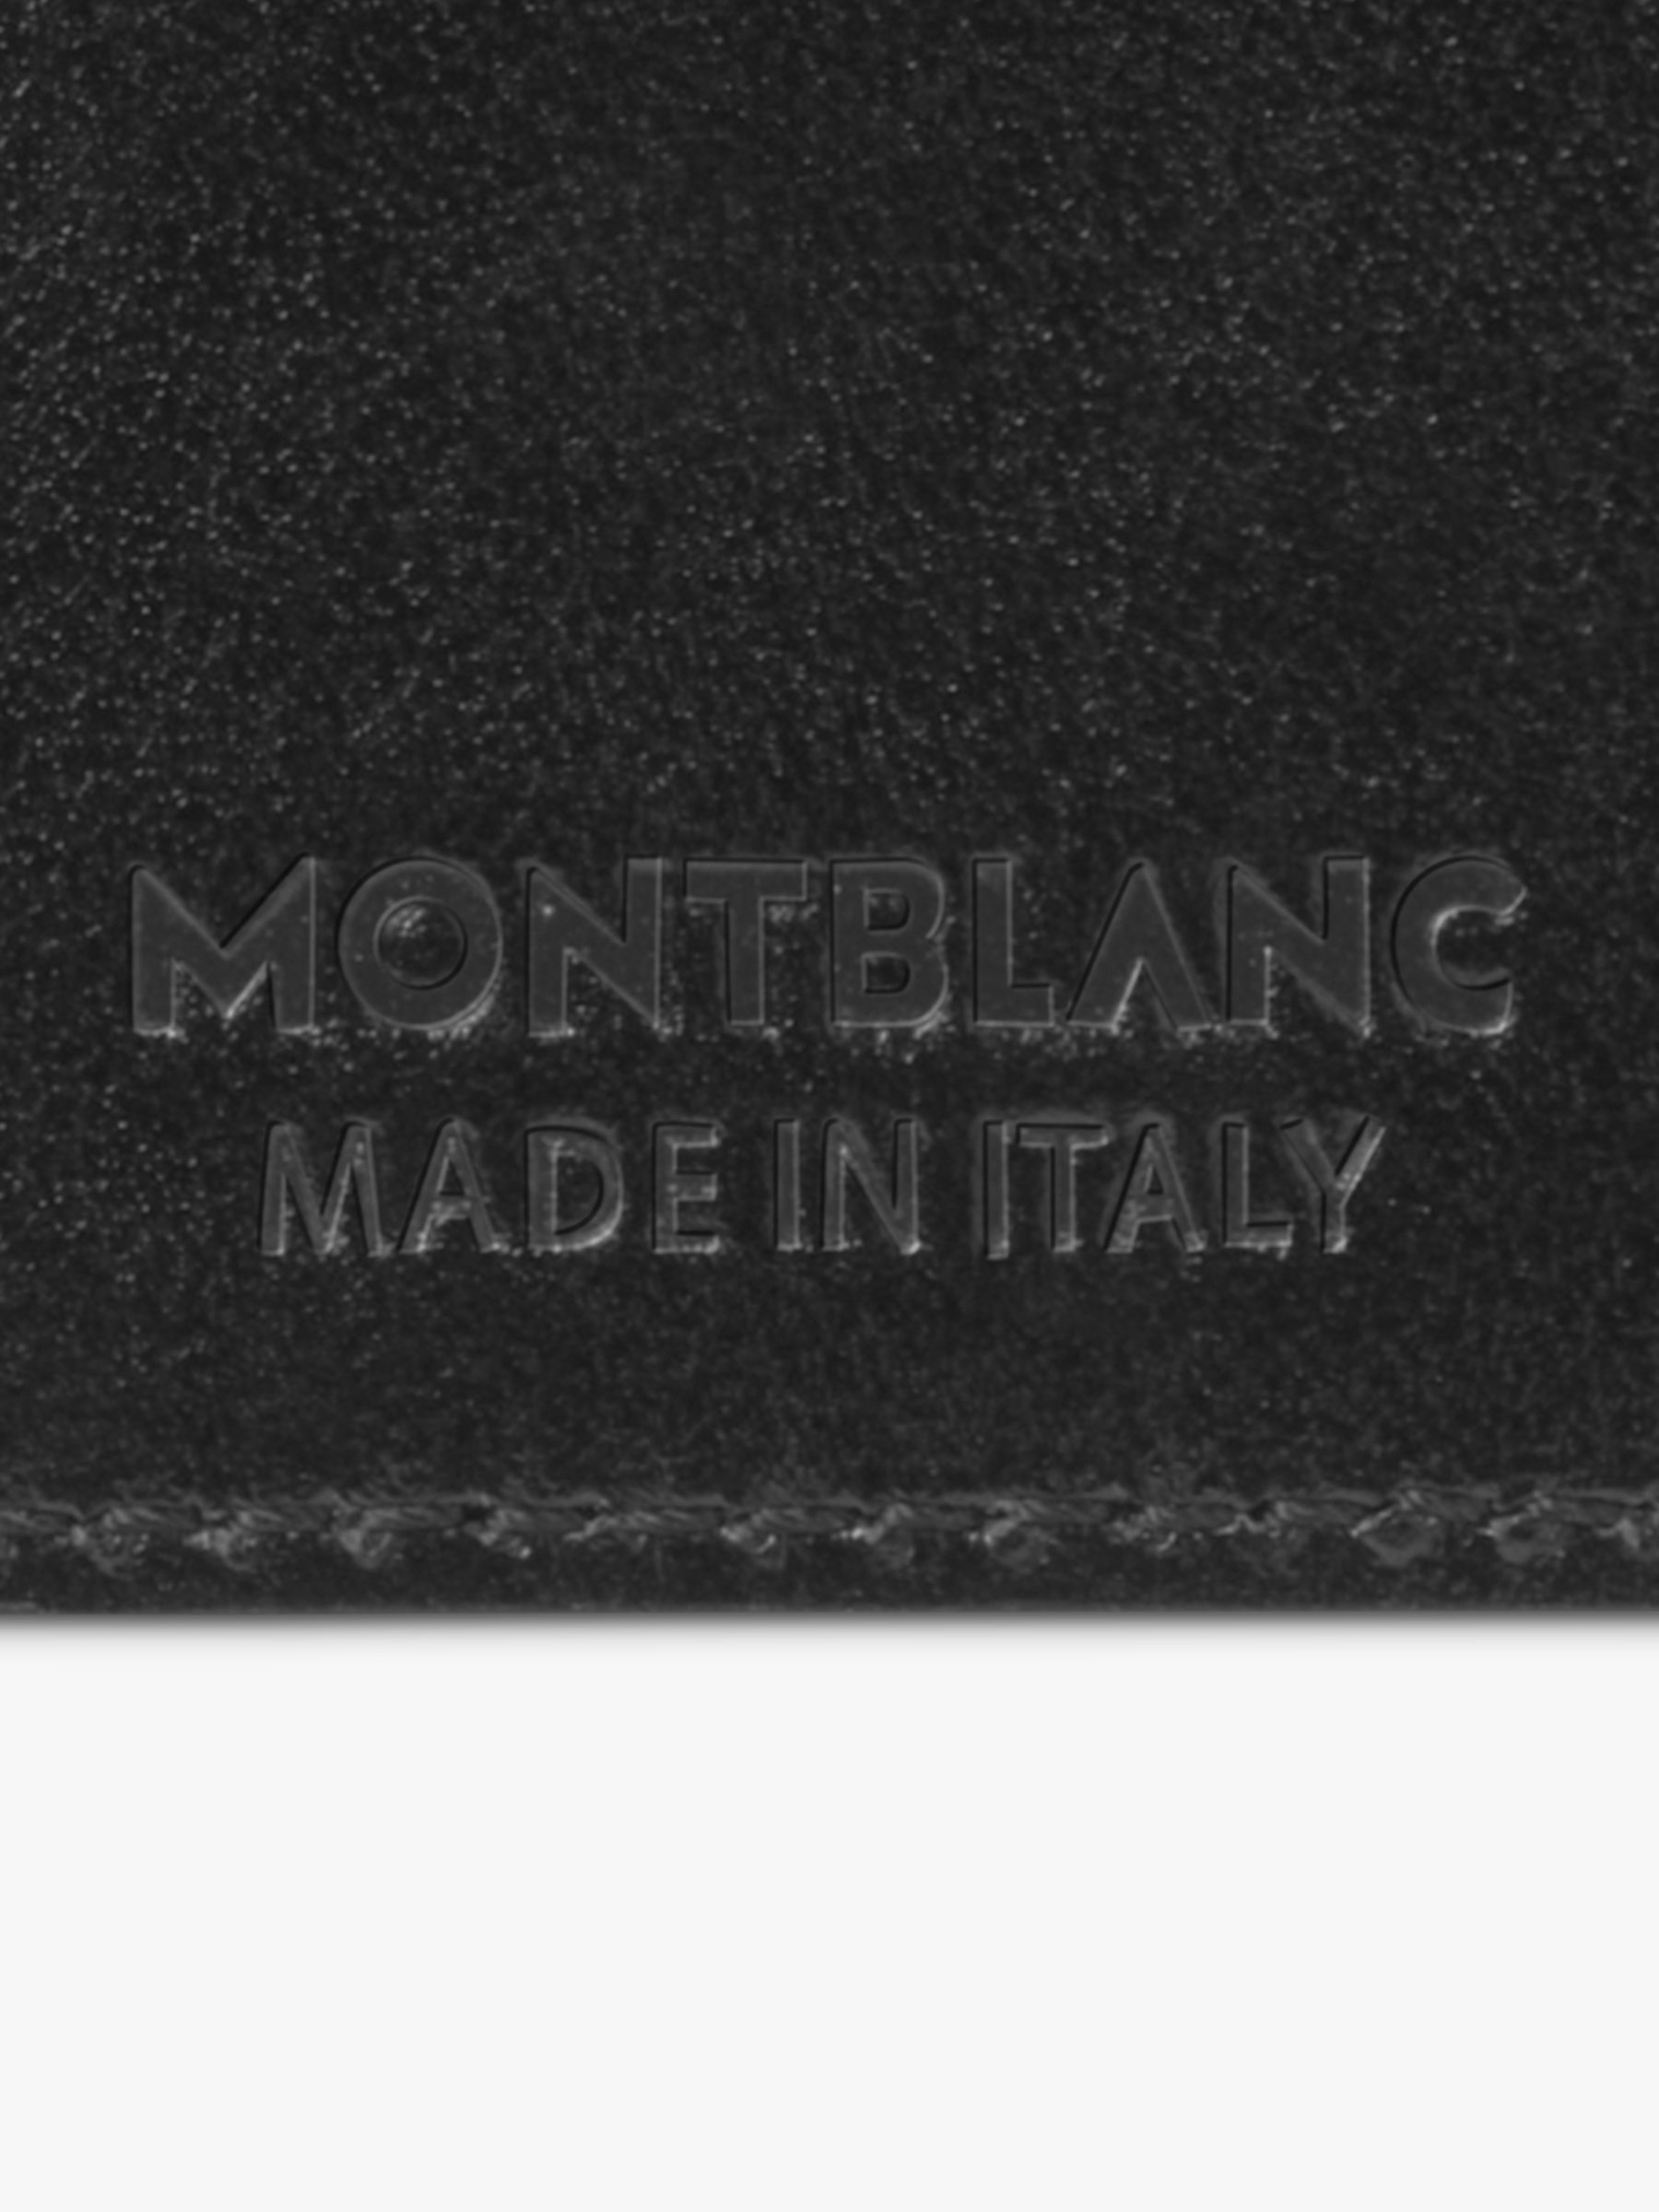 Montblanc Meisterstück Leather Money Clip Wallet, Black